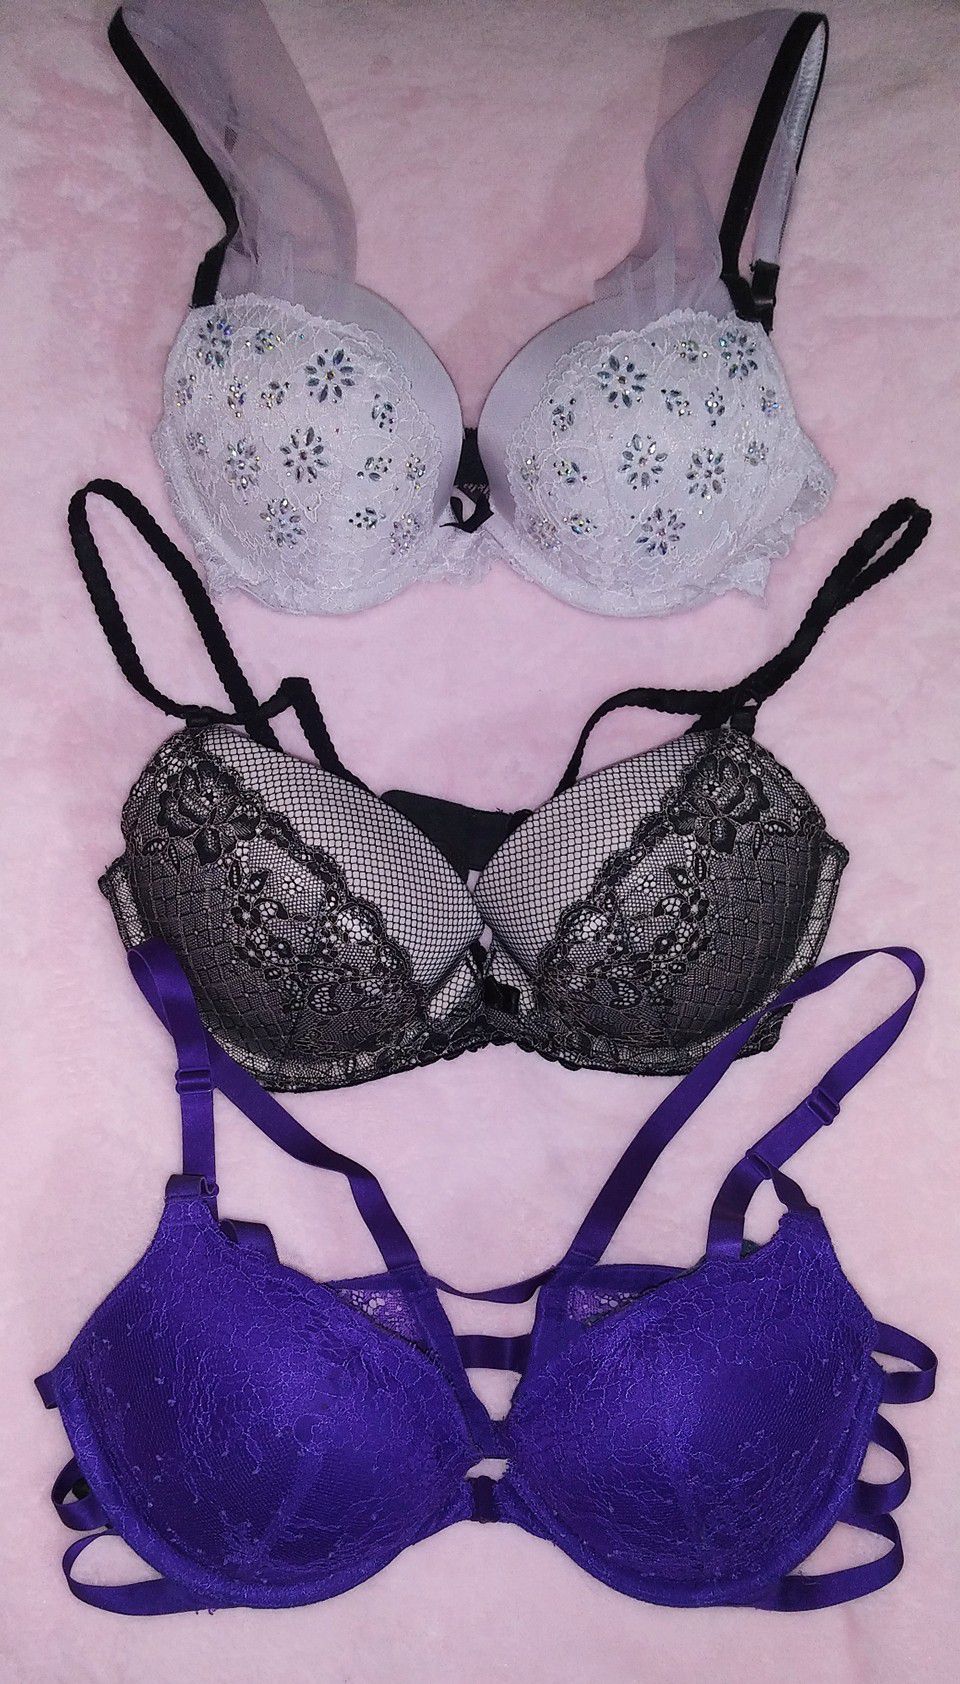 3 size 36C Victoria's Secret pushup bras